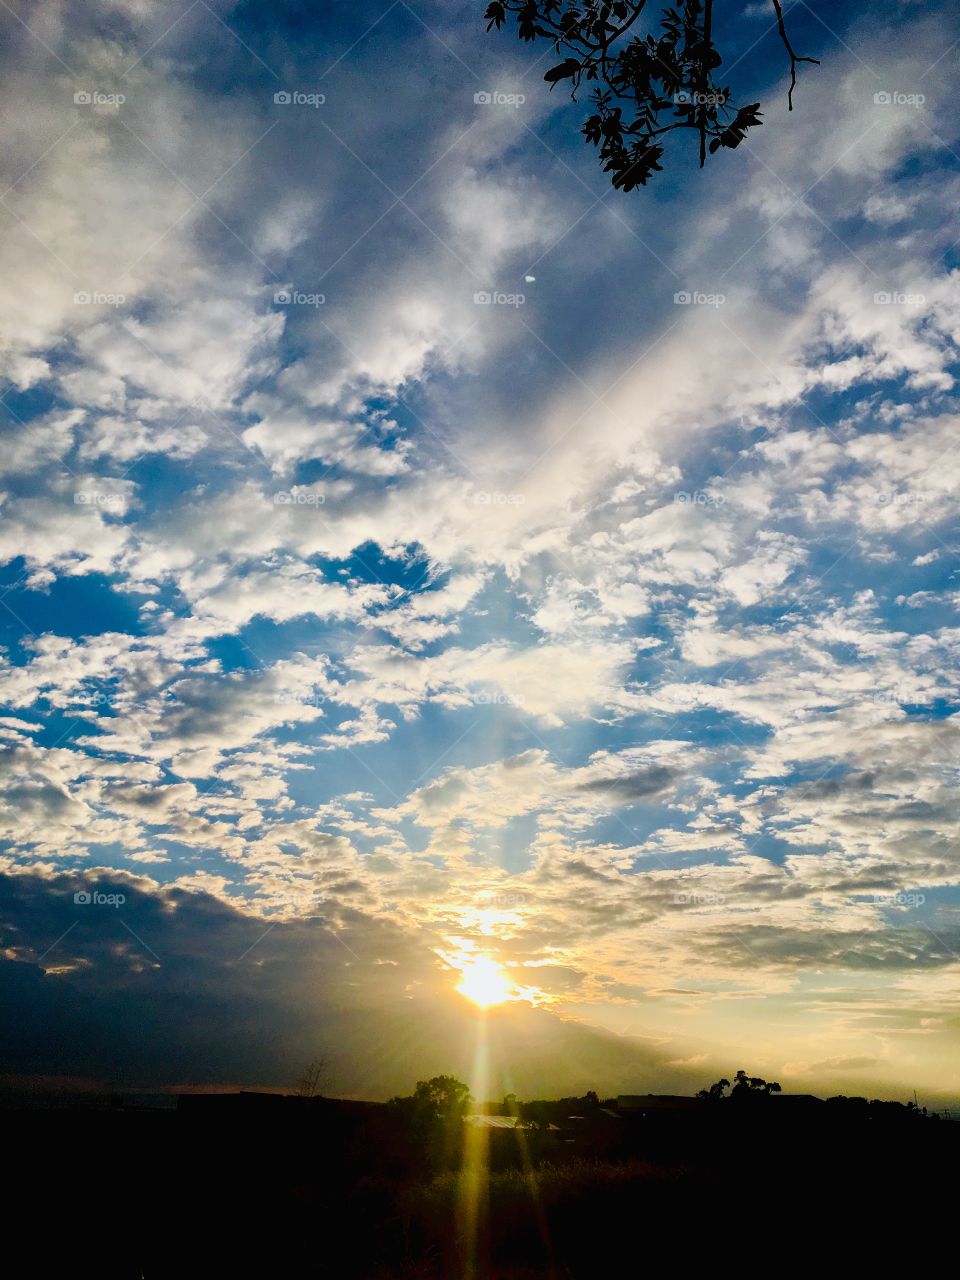 🌅Por fim, pausa para ver #Jundiaí acordar entre as #nuvens. Que a #terçafeira possa valer a pena!
Admirando no clique 4:
🍃
#sol #sun #sky #céu #photo #nature #morning #alvorada #natureza #fotografia #pictureoftheday